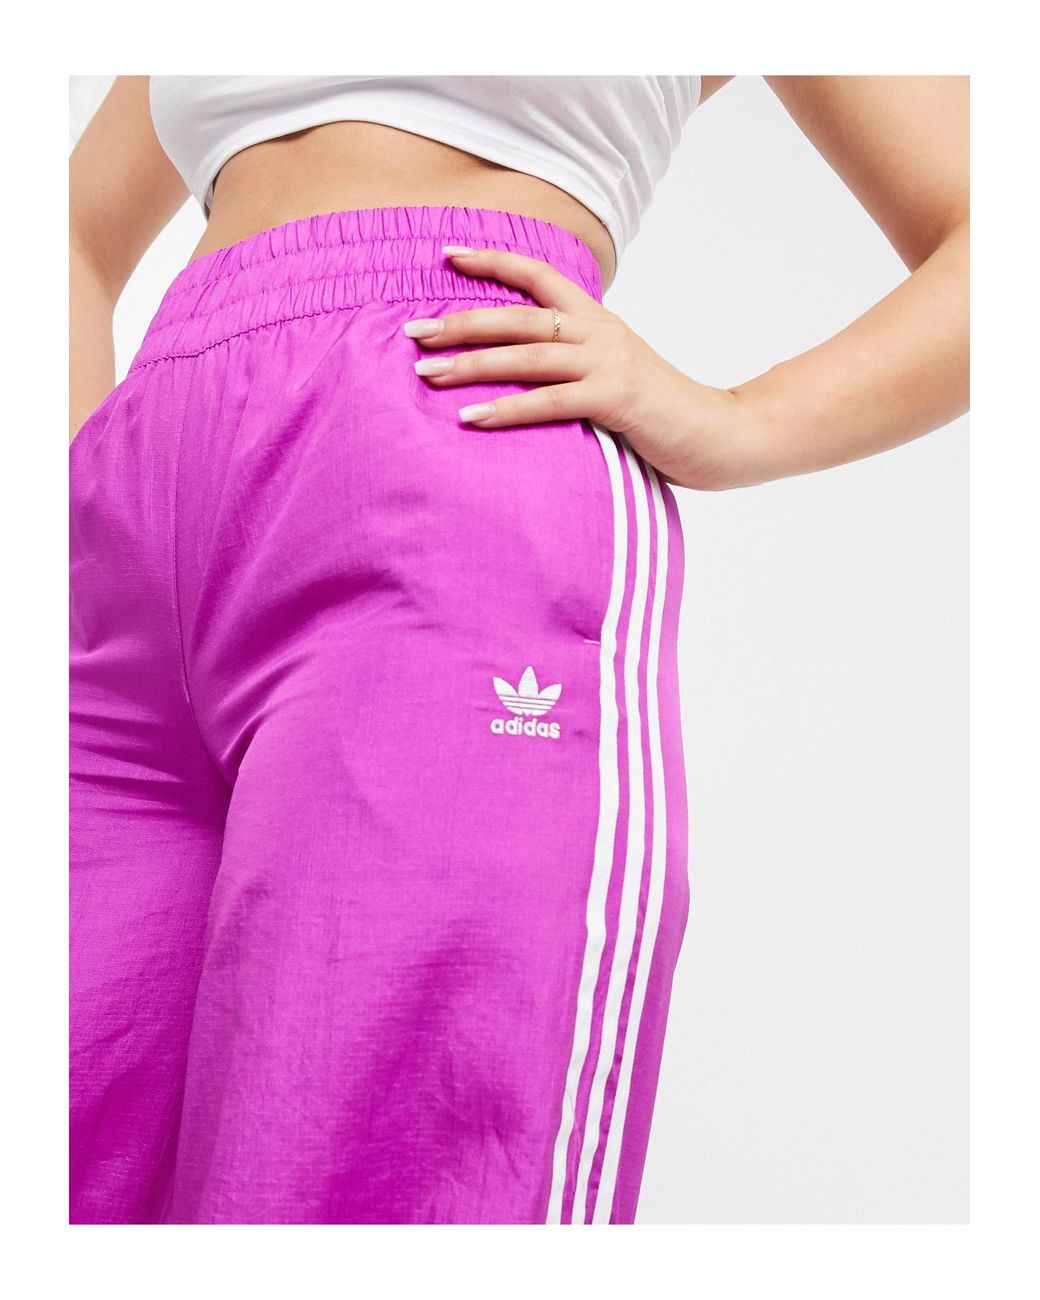 knal Vouwen Ramen wassen adidas Originals – Bellista – Weite Hose mit drei Streifen in Pink | Lyst AT